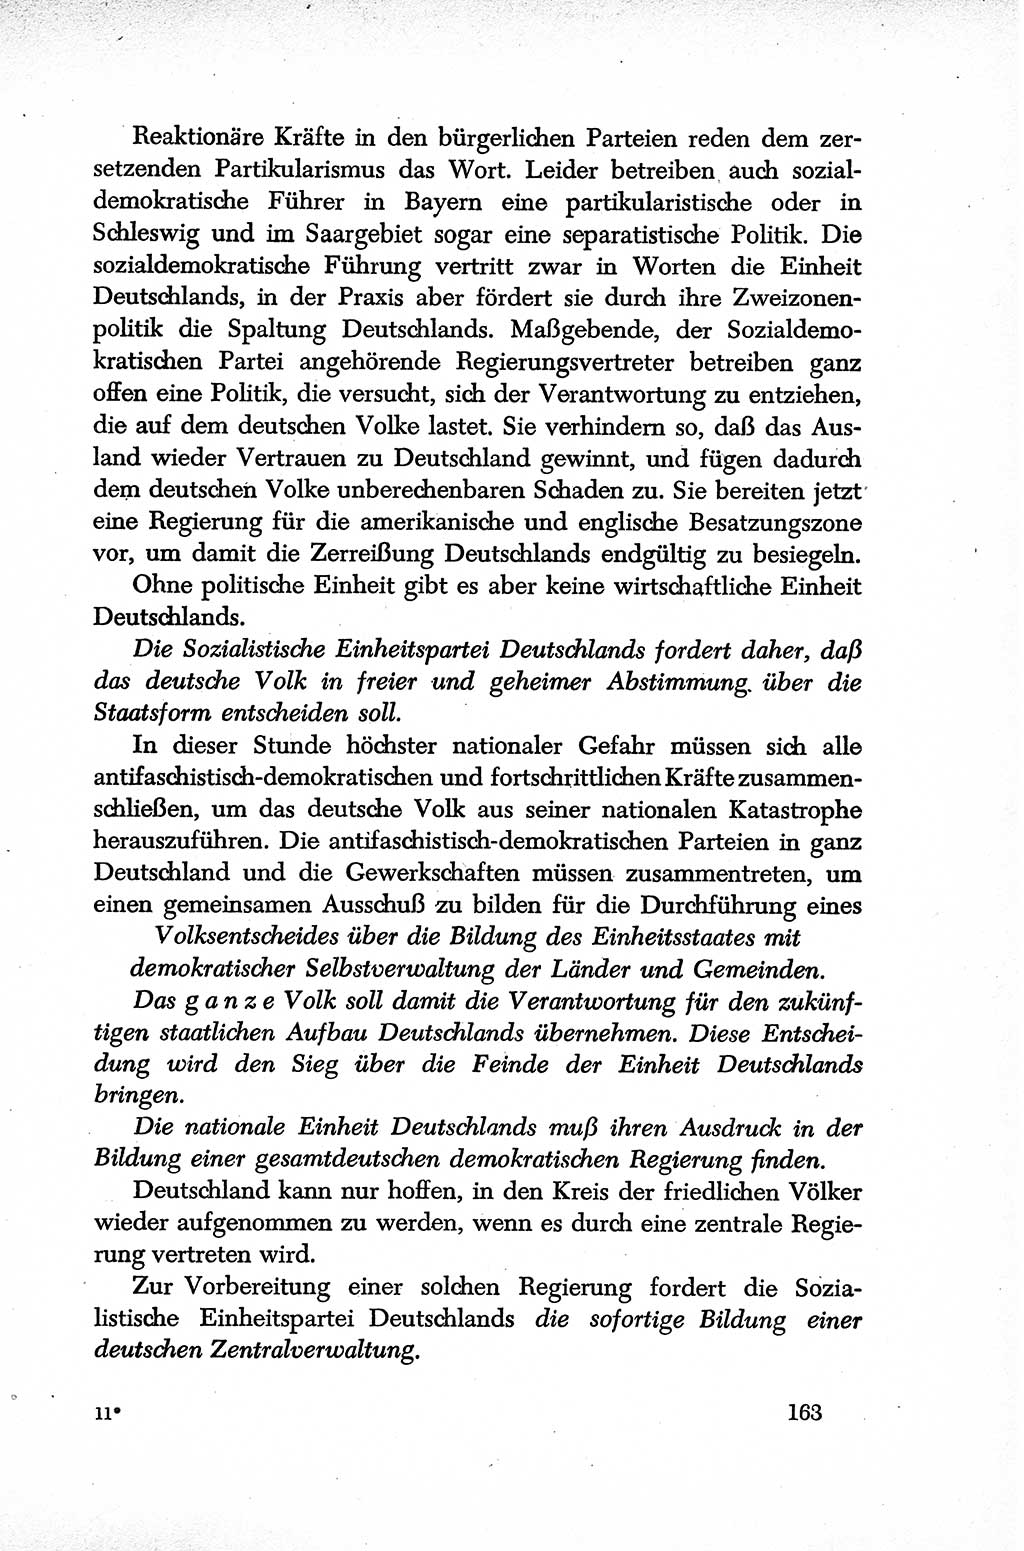 Dokumente der Sozialistischen Einheitspartei Deutschlands (SED) [Sowjetische Besatzungszone (SBZ) Deutschlands] 1946-1948, Seite 163 (Dok. SED SBZ Dtl. 1946-1948, S. 163)